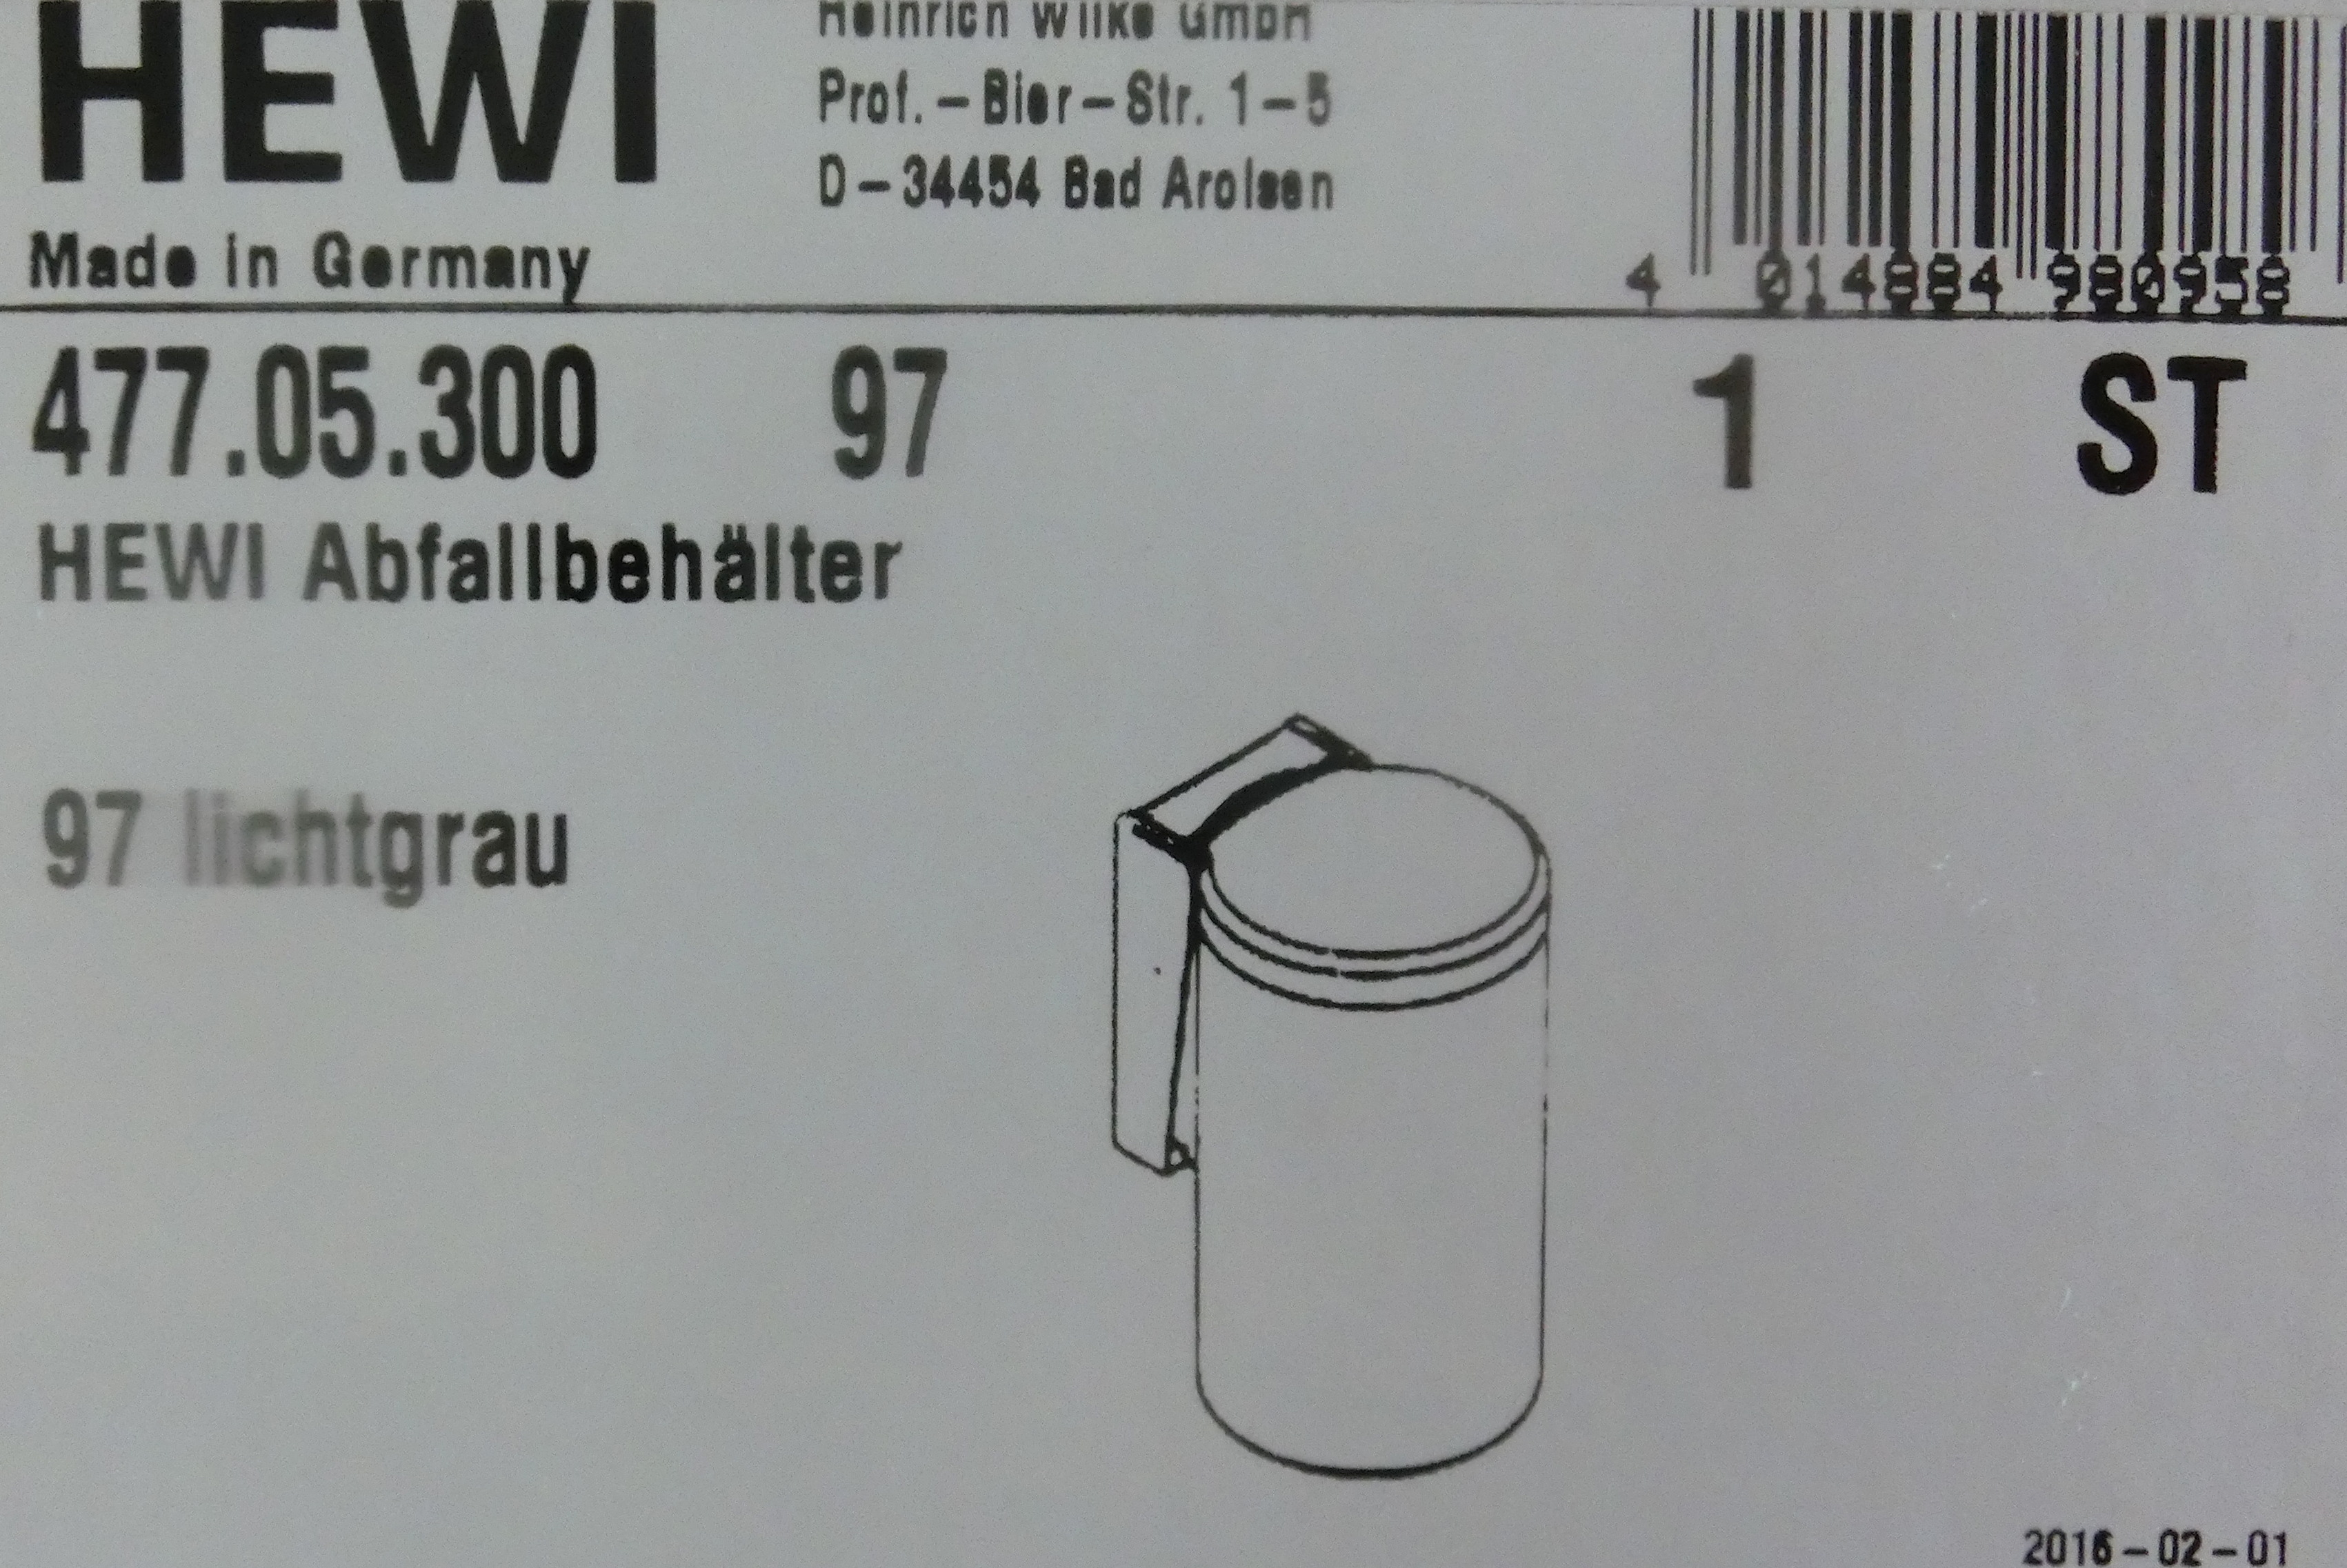 Hewi Serie 477 Abfallbehälter lichtgrau; 477.05.300-97 